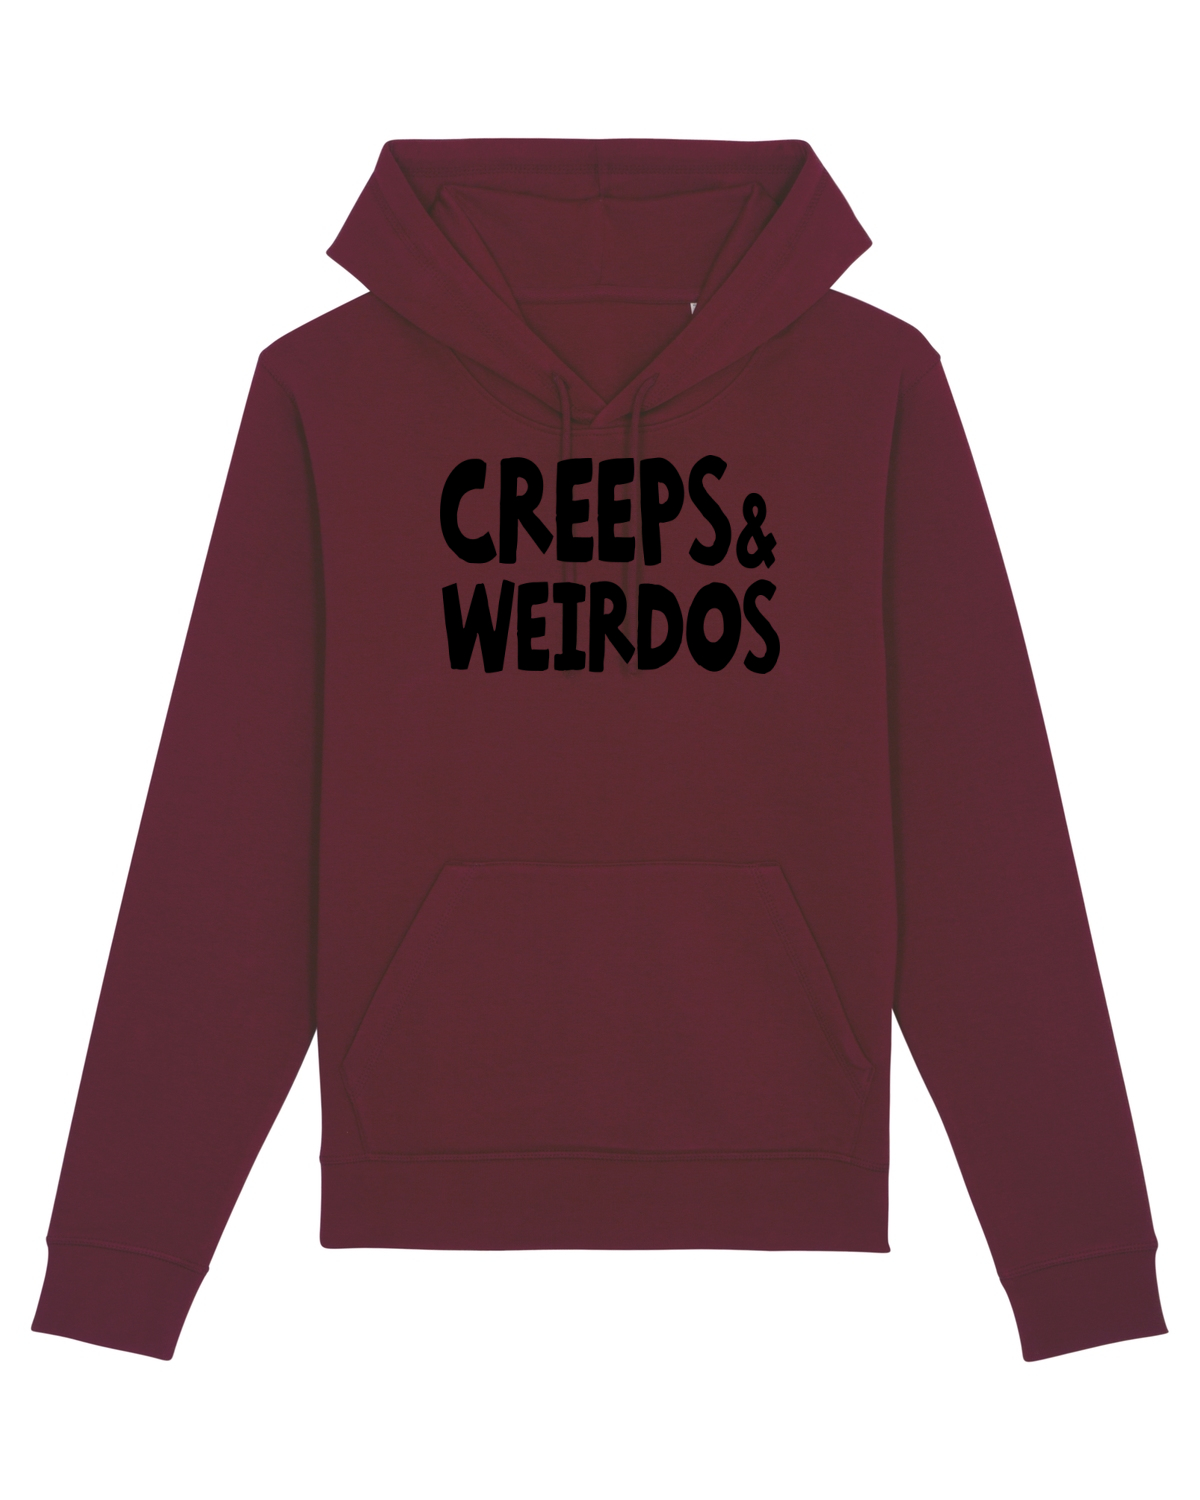 Creeps & Weirdos - black